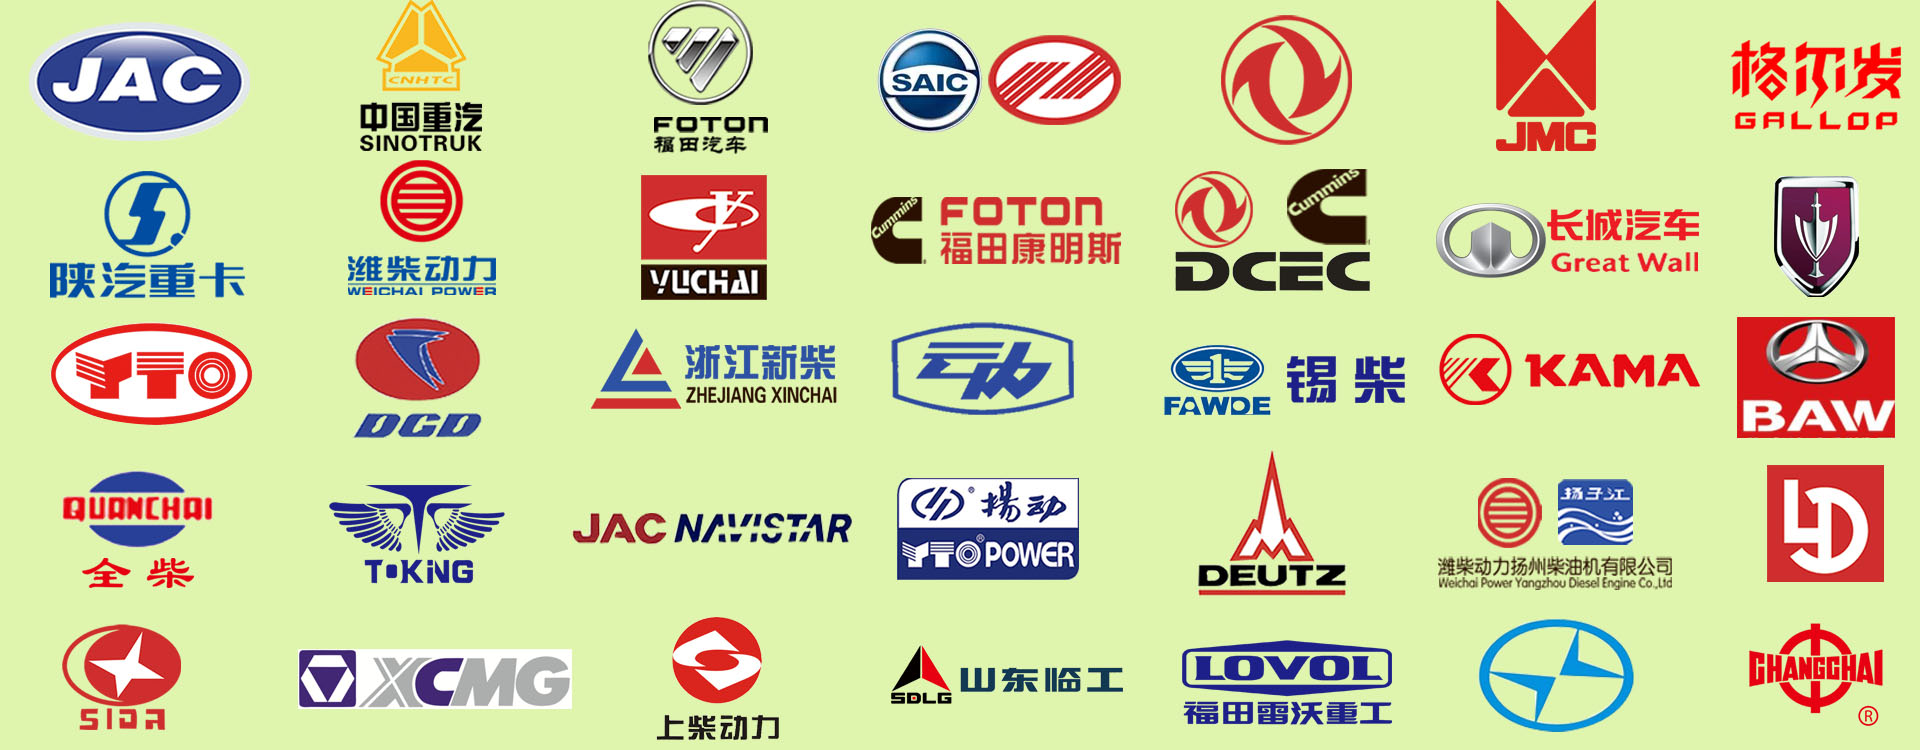 Shandong Yuchung Power Co., Ltd.